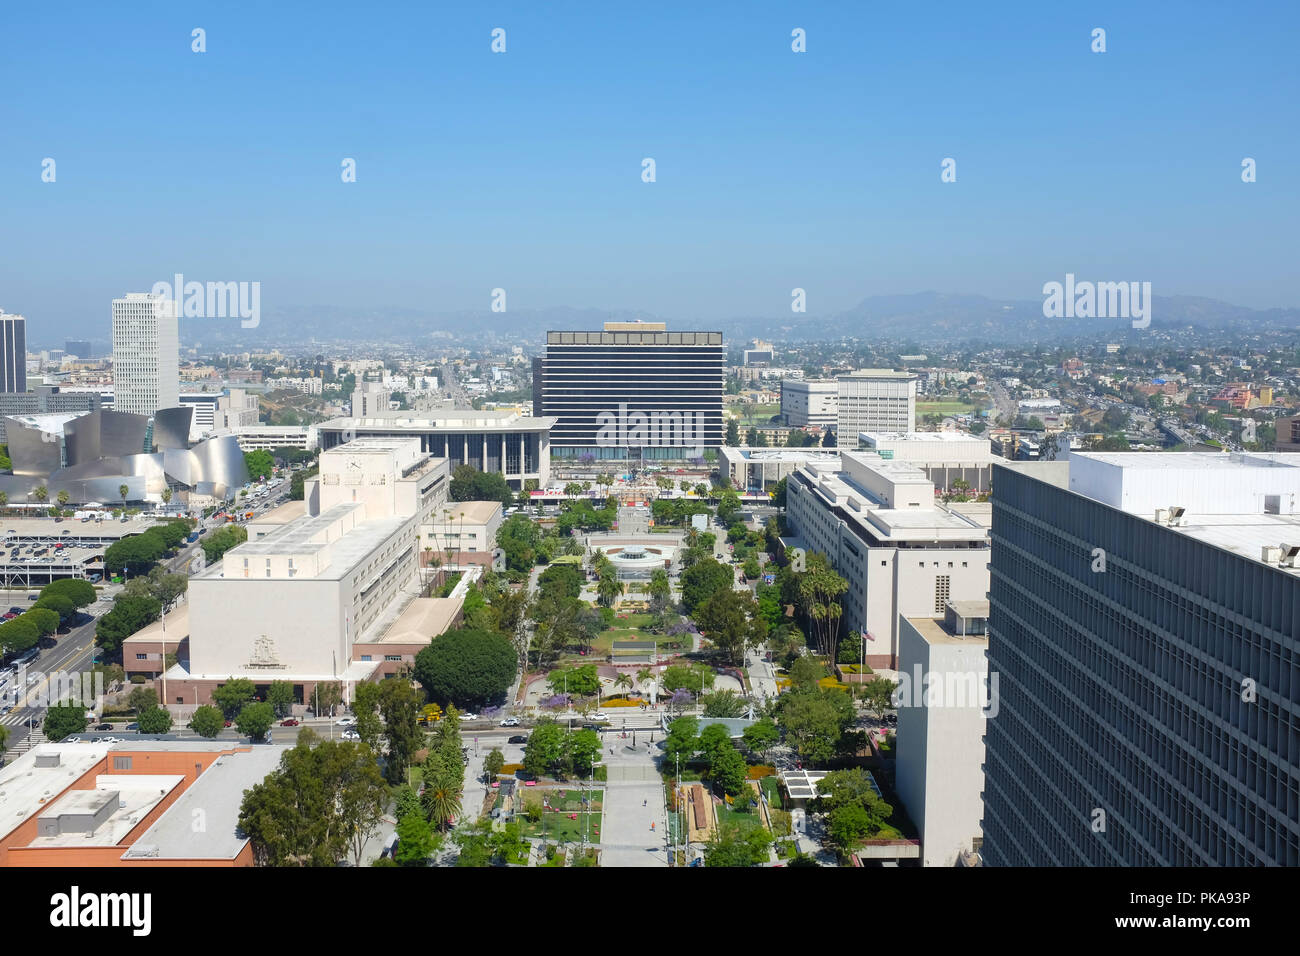 LOS ANGELES, Kalifornien - 12. Juni 2018: die Innenstadt von Los Angeles aus dem Rathaus gesehen. Übersicht: Disney Hall, Mosk, Gerichtsgebäude, DWP Building, Grand Park, D Stockfoto